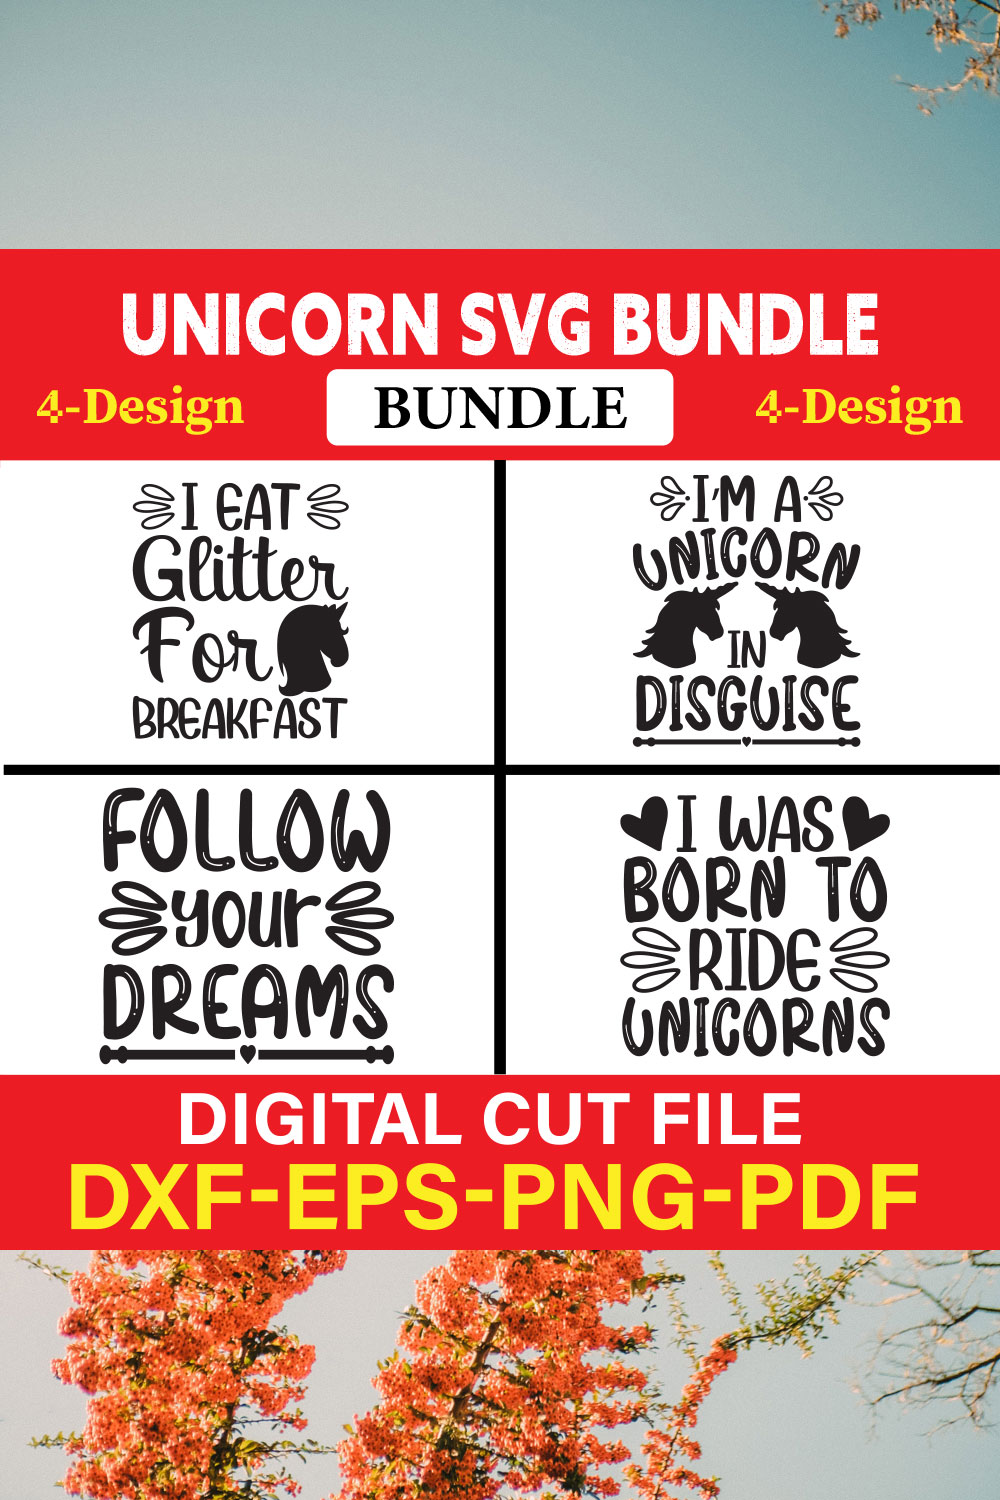 Unicorn T-shirt Design Bundle Vol-2 pinterest preview image.